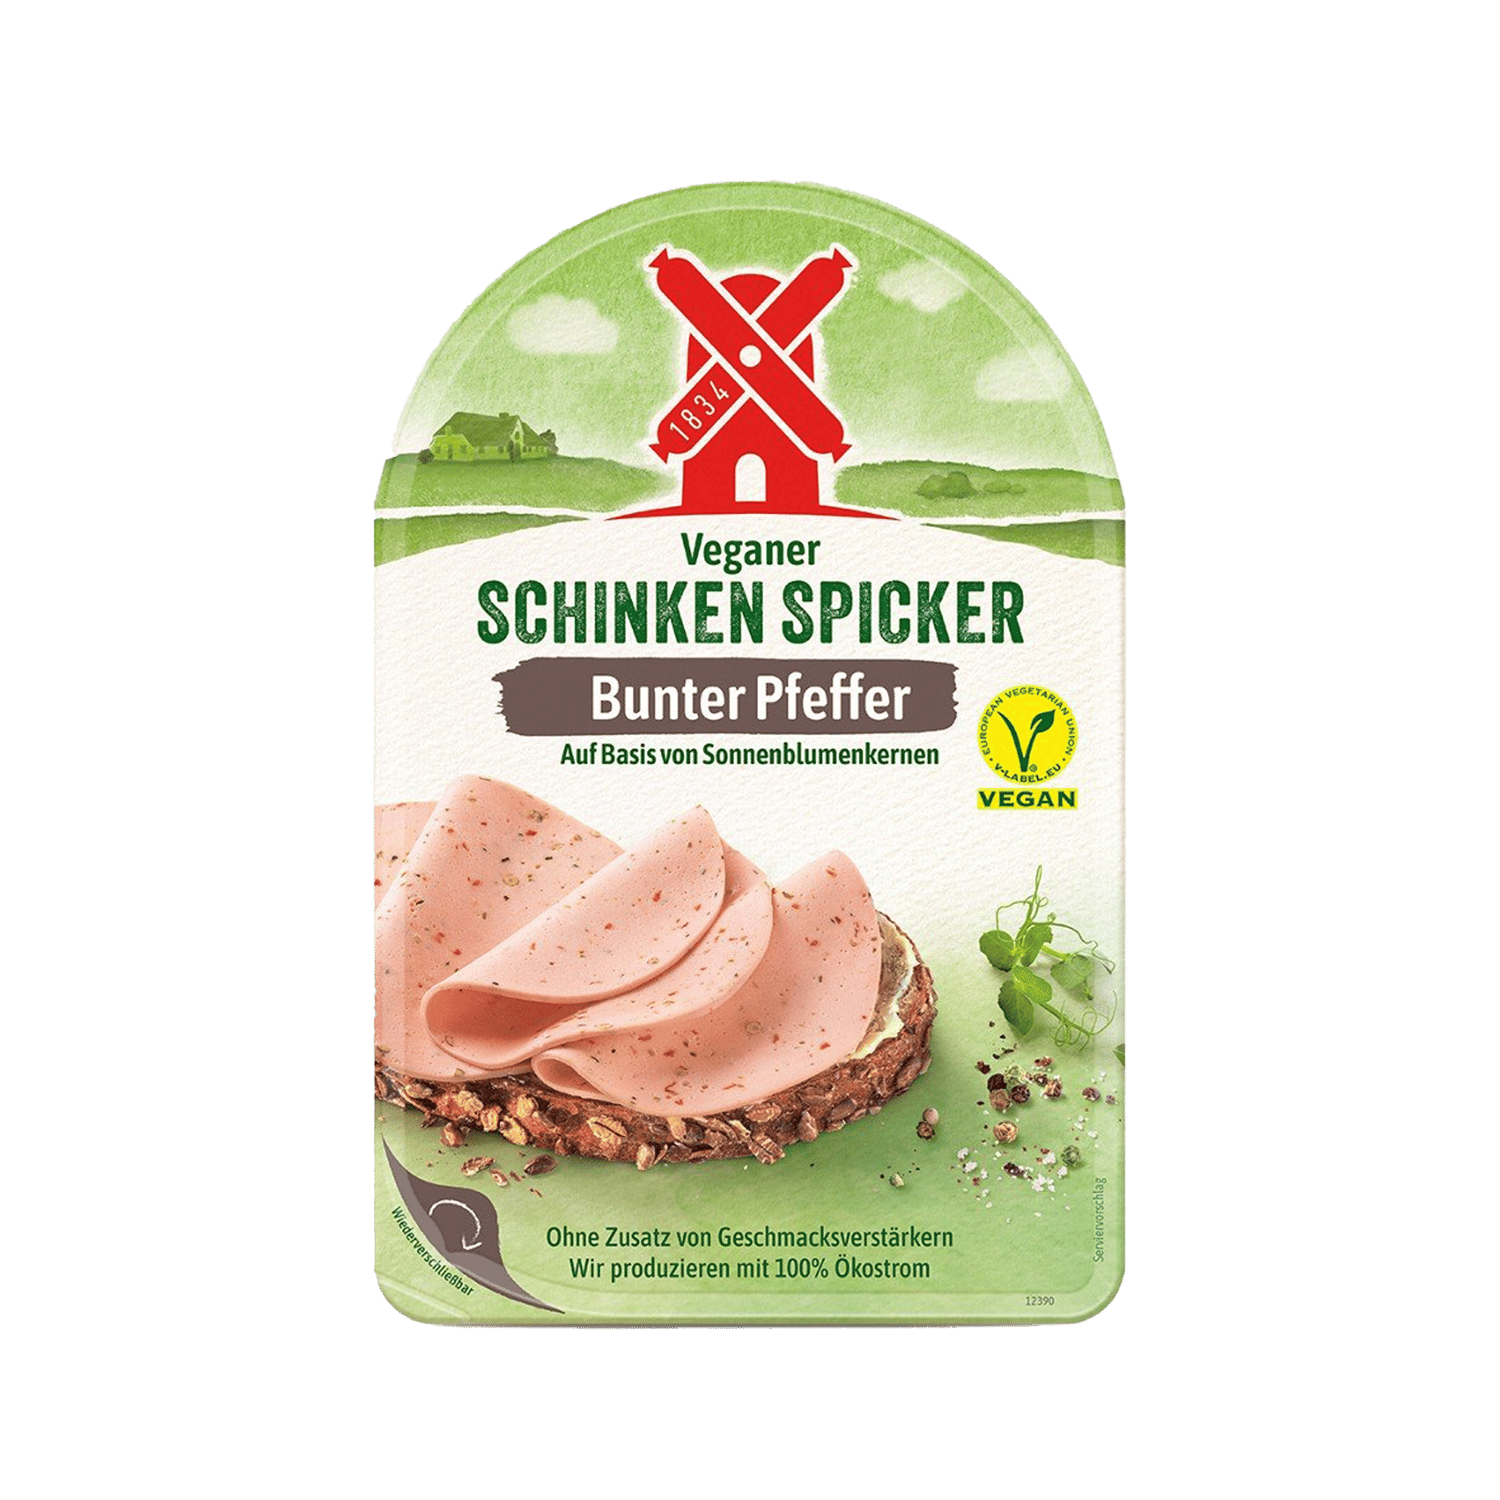 Veganer Schinken Spicker Bunter Pfeffer, 80g